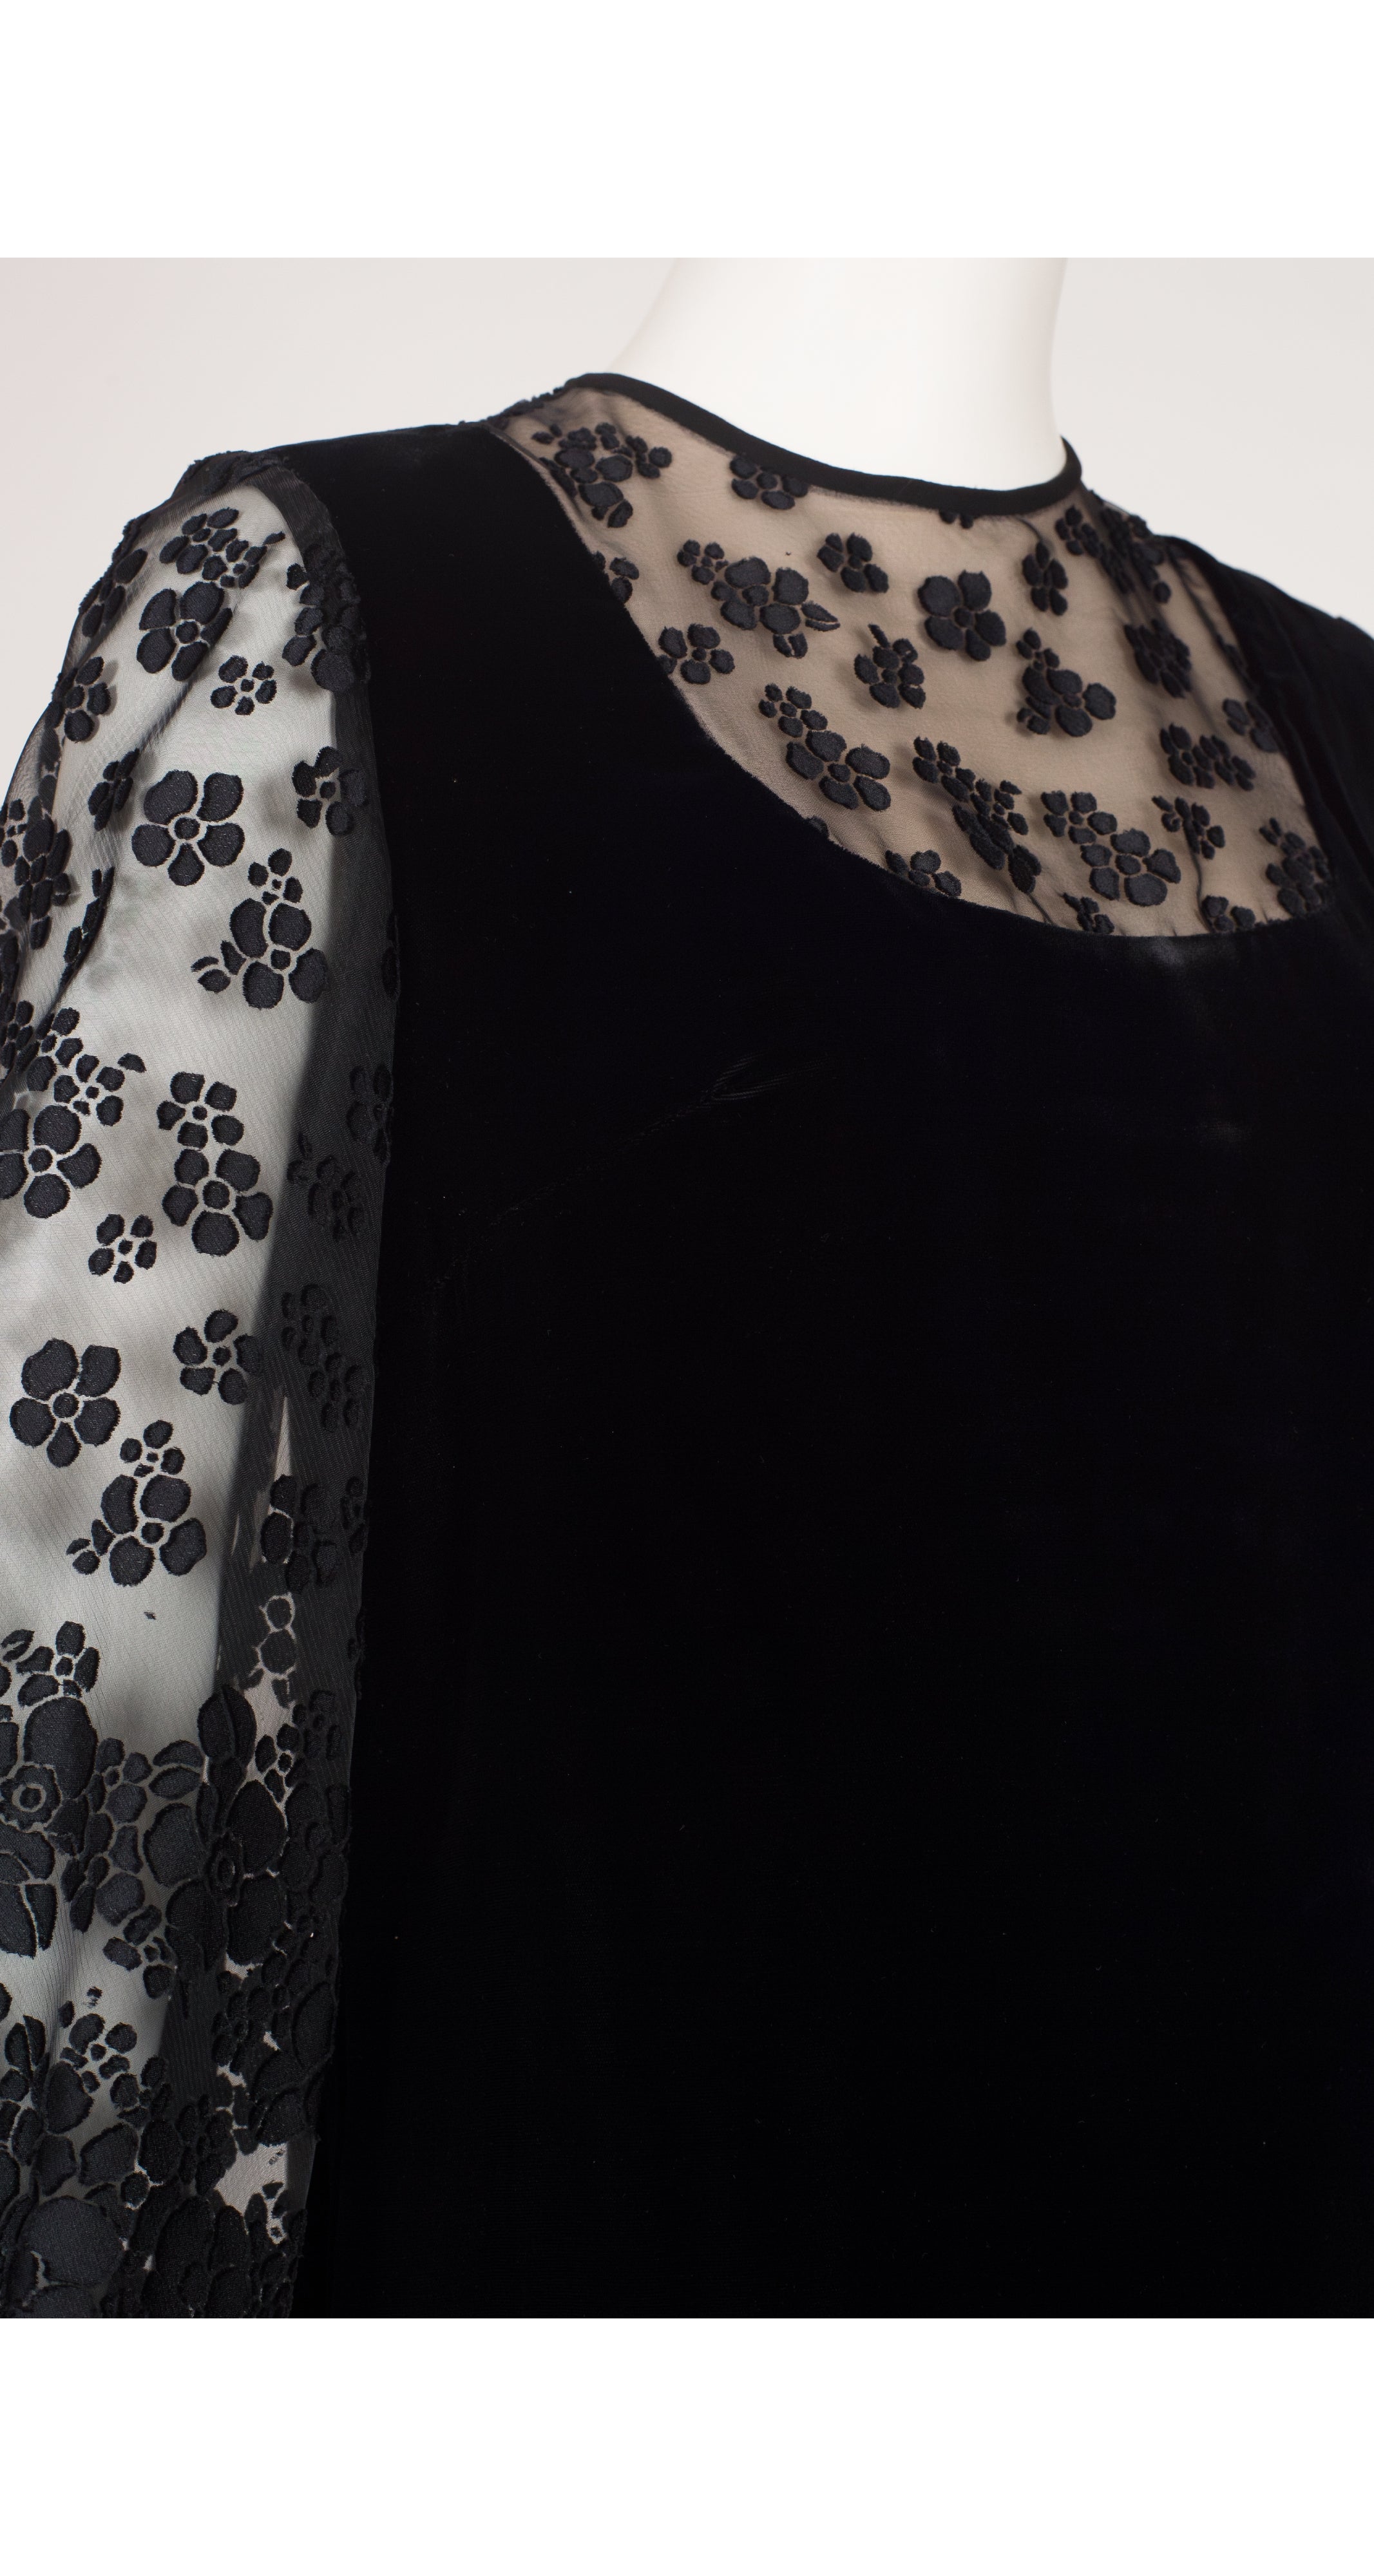 1960s Floral Black Velvet Balloon Sleeve Gown